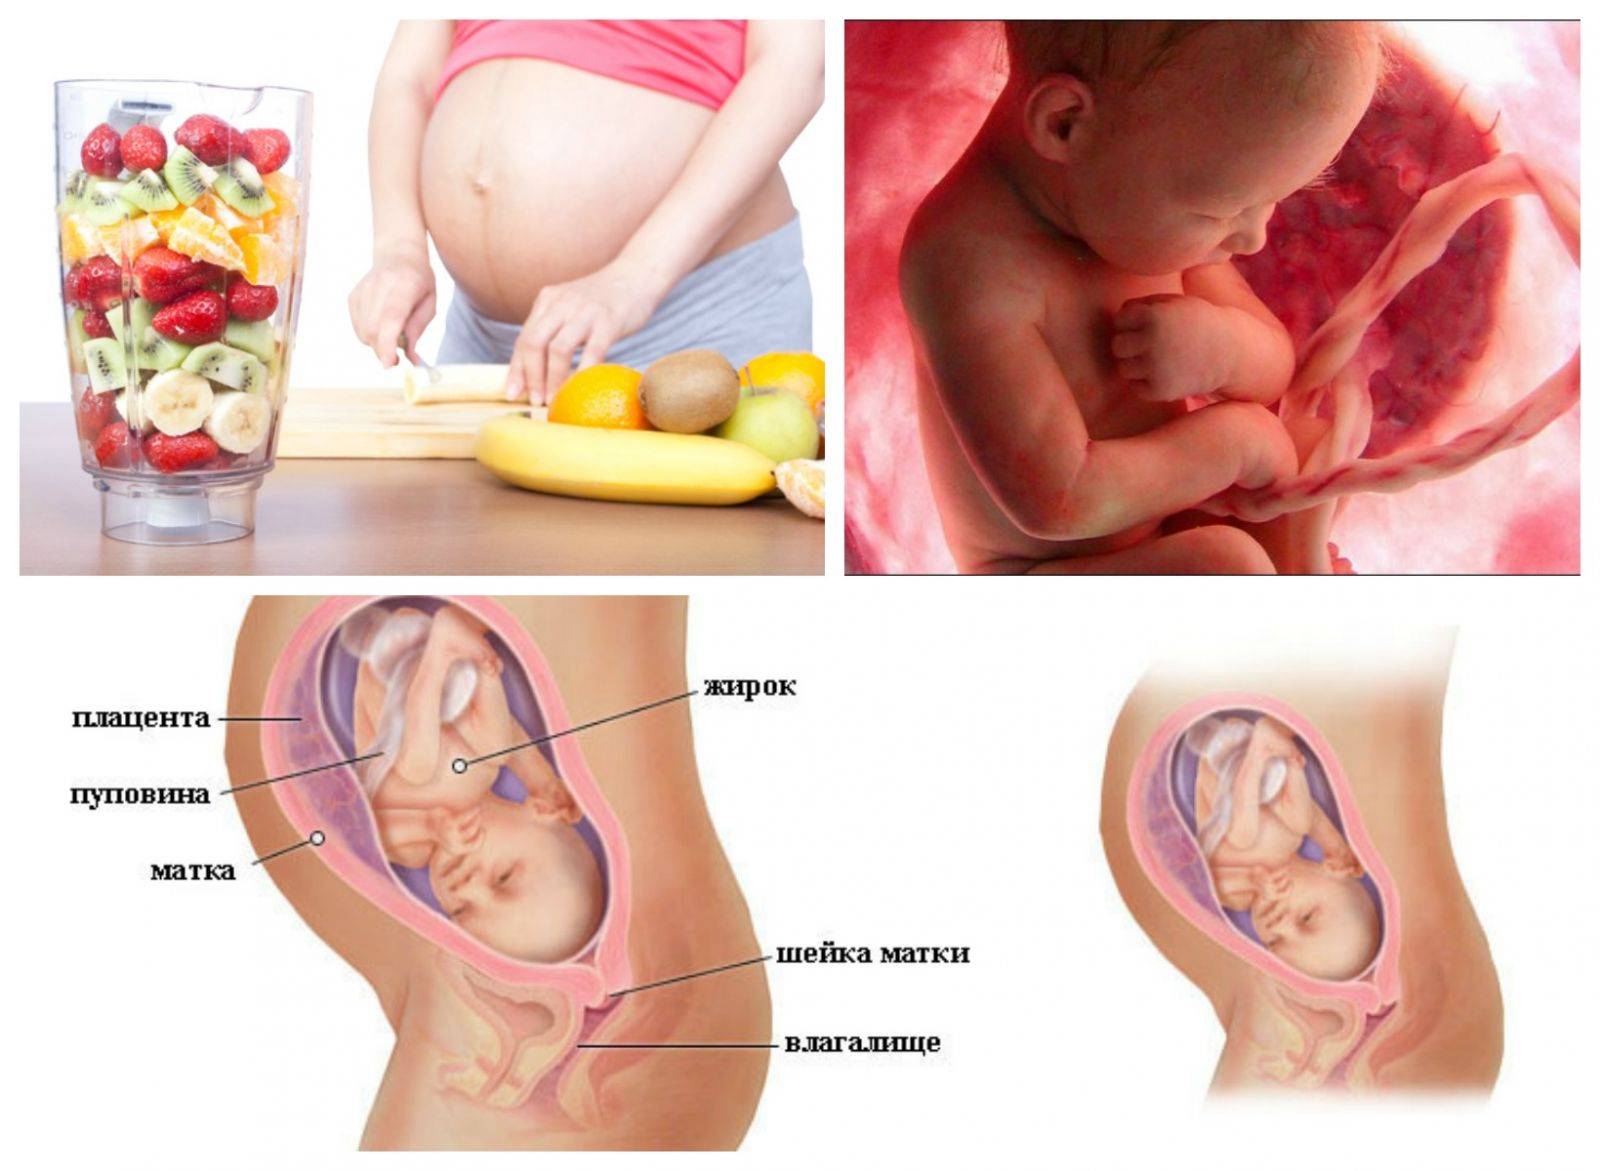 30 неделя беременности. календарь беременности   | материнство - беременность, роды, питание, воспитание